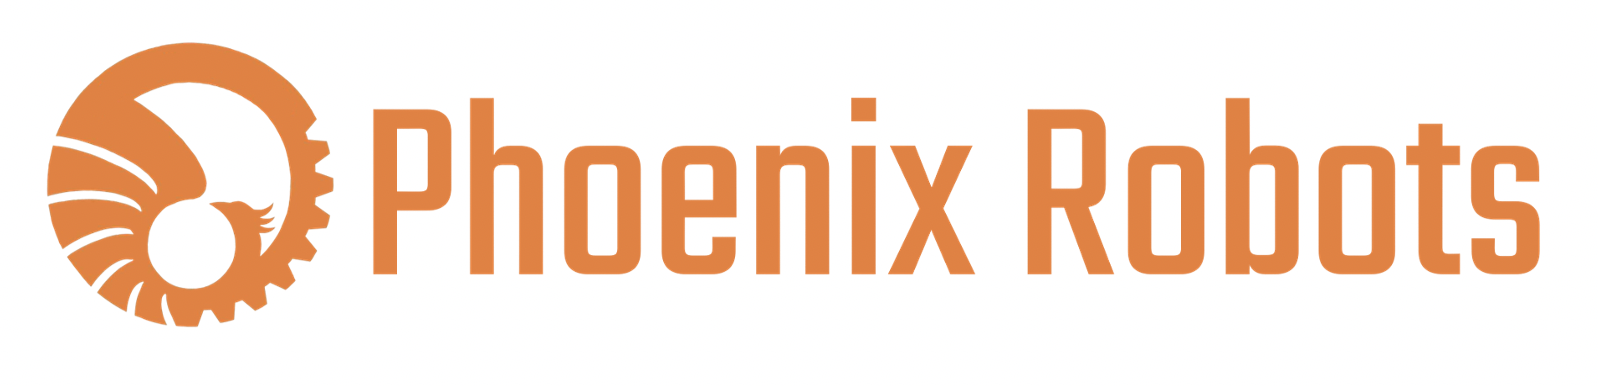 Phoenix Robots Logo